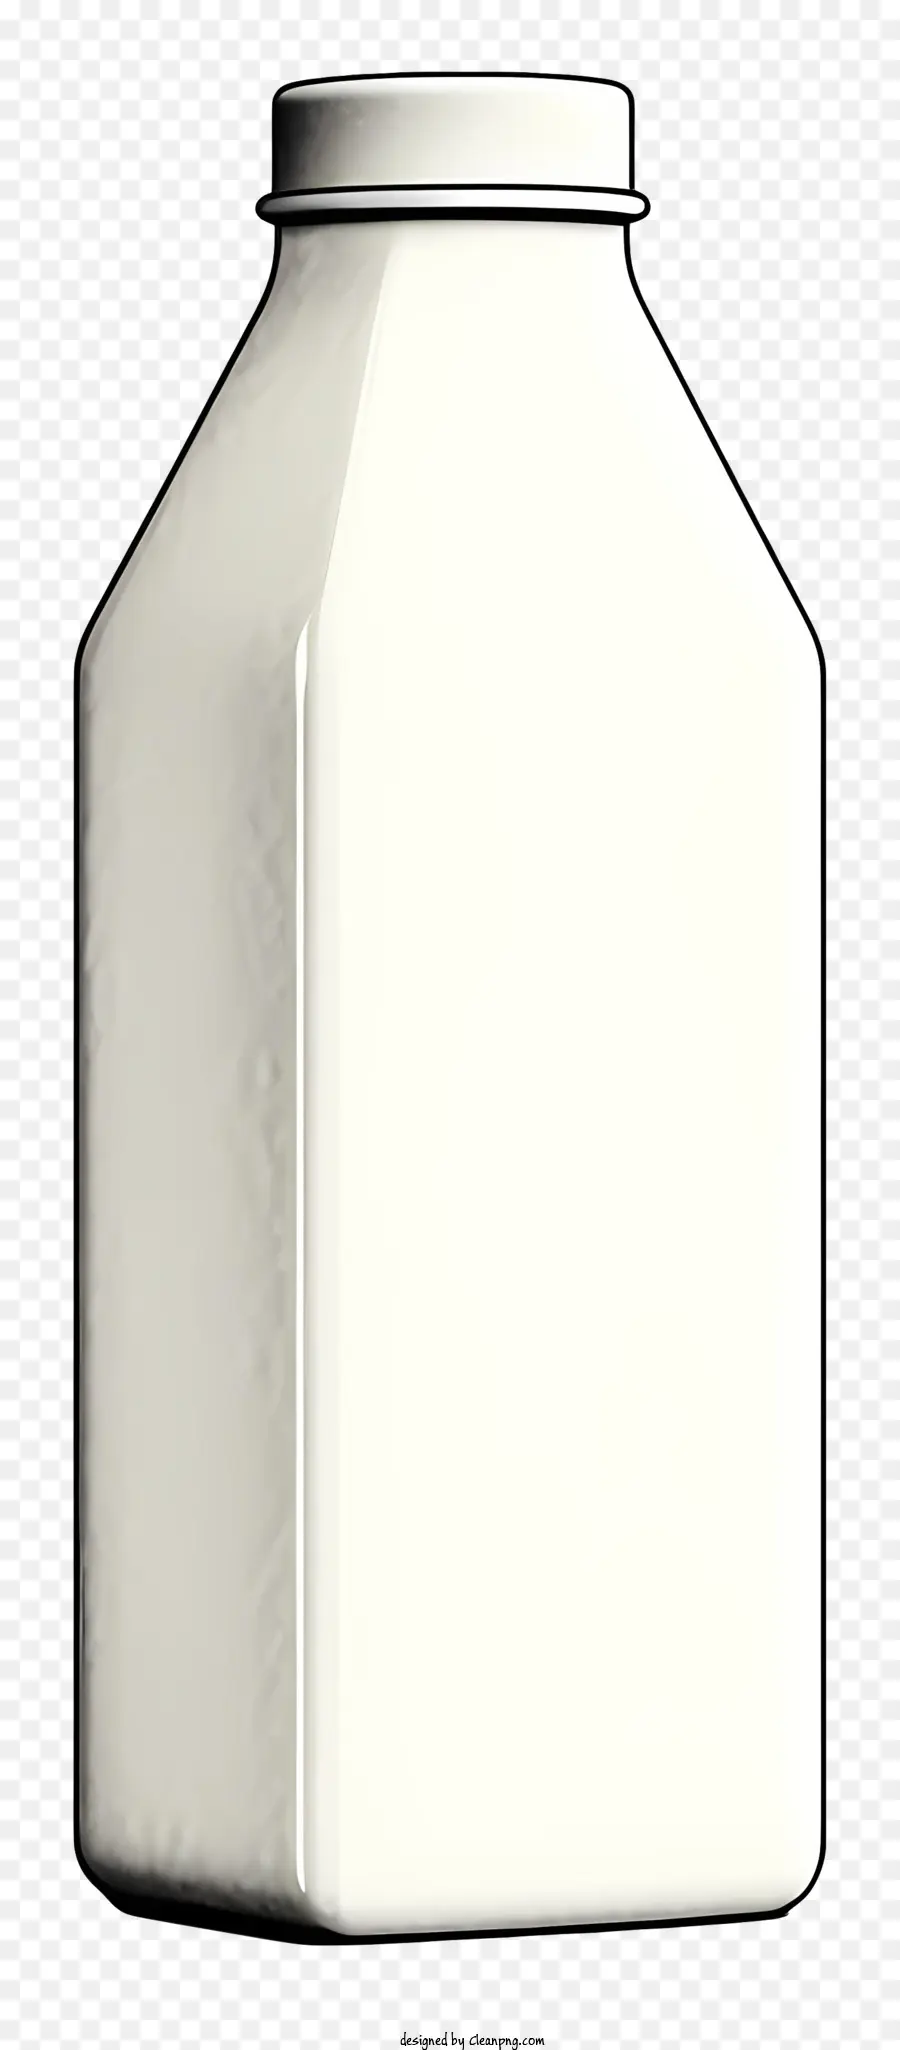 chai nhựa - Chai nhựa trắng có thân tròn và cổ cong, ngồi trên nền đen, với nhãn tròn lớn được bao phủ một phần bởi nhãn dán trắng với văn bản đen